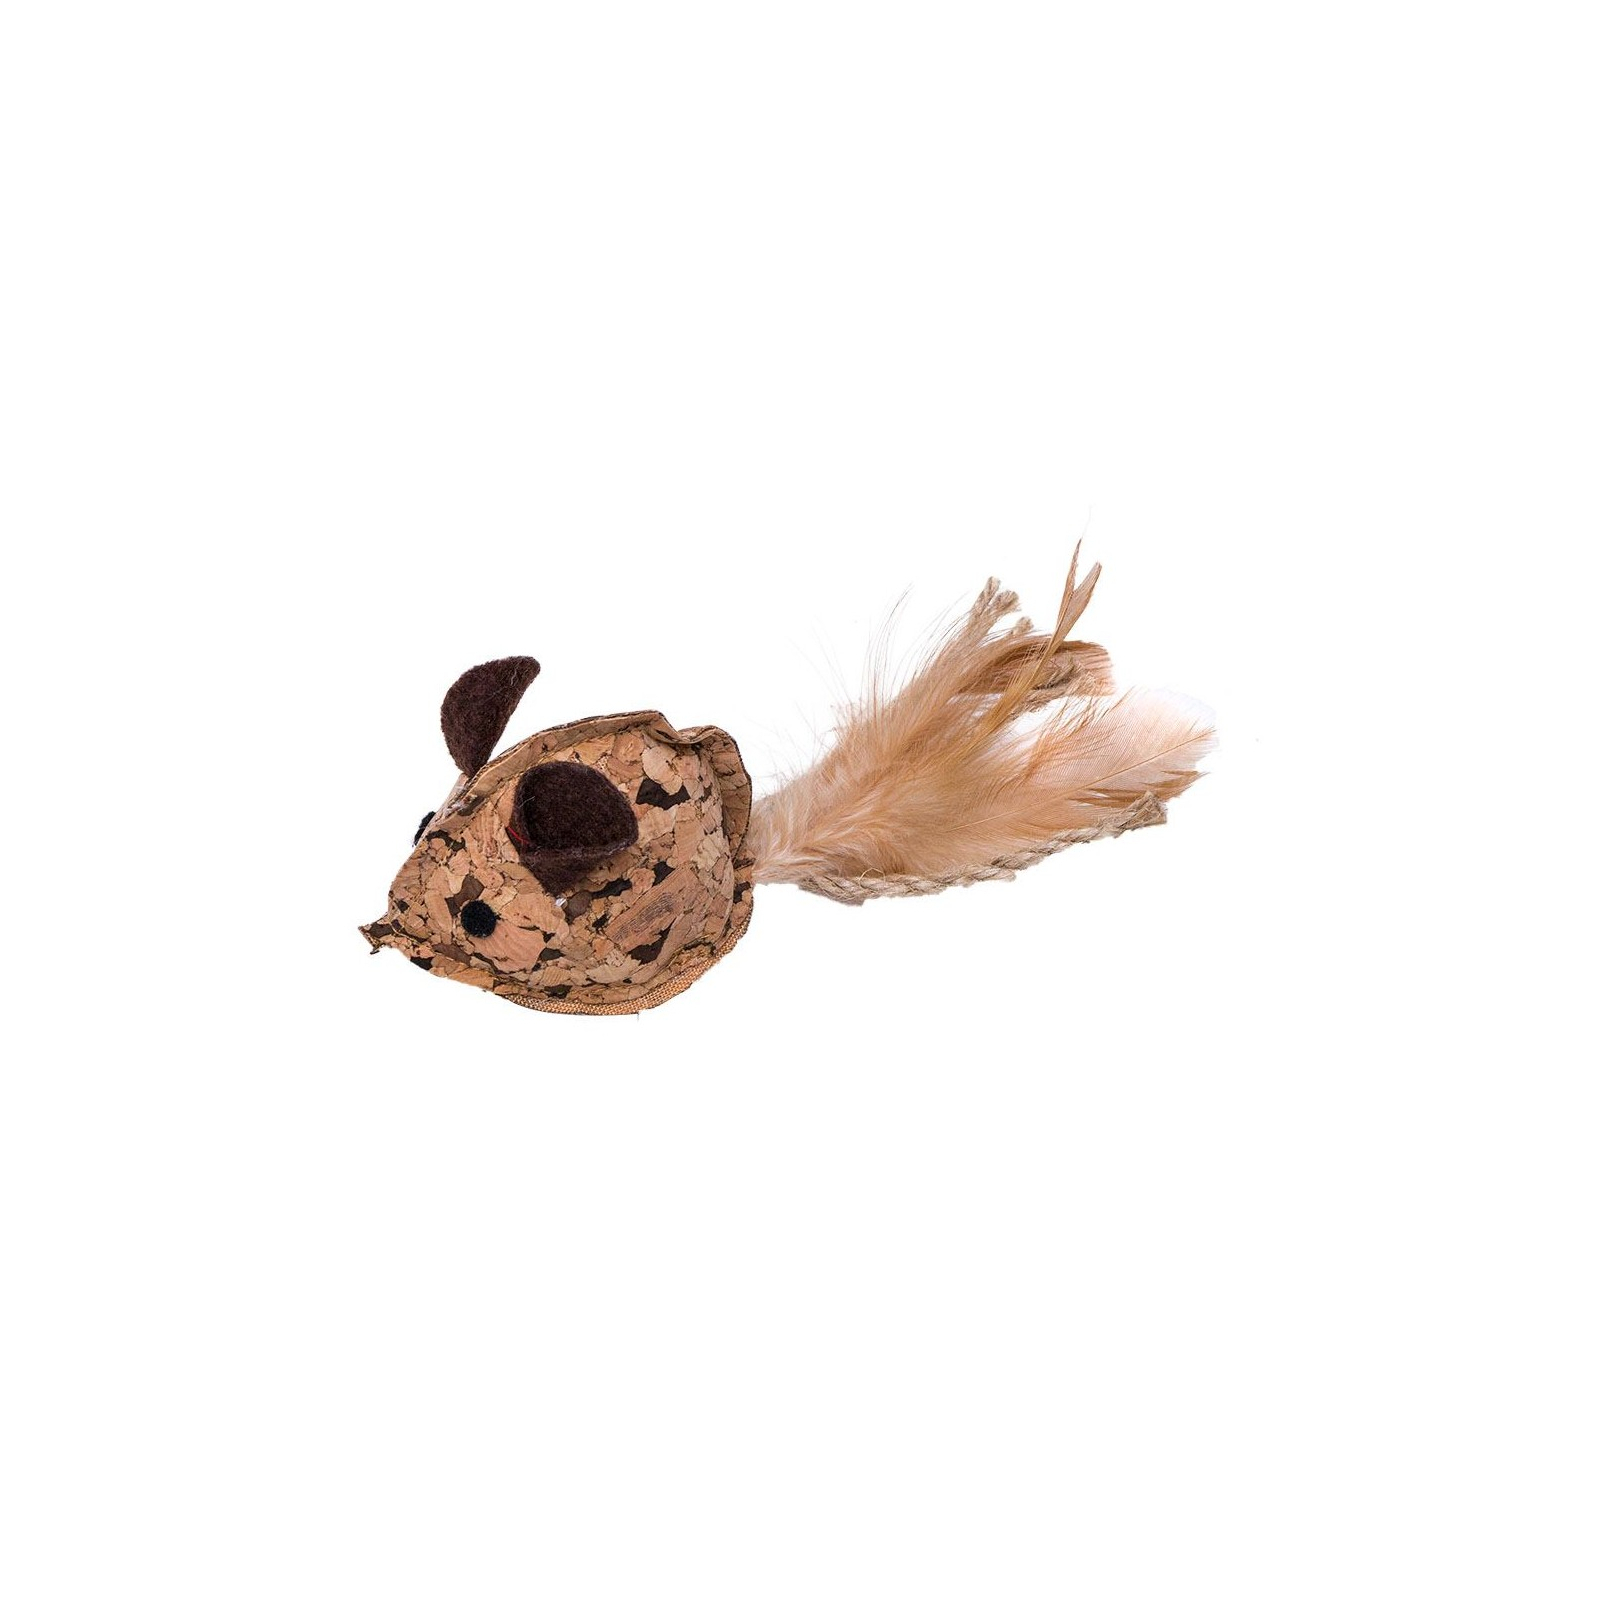 Игрушка для кошек Eastland Мышка из мататаби из натуральной пробки 6.5х4.5х4.5 см (6970115703094)